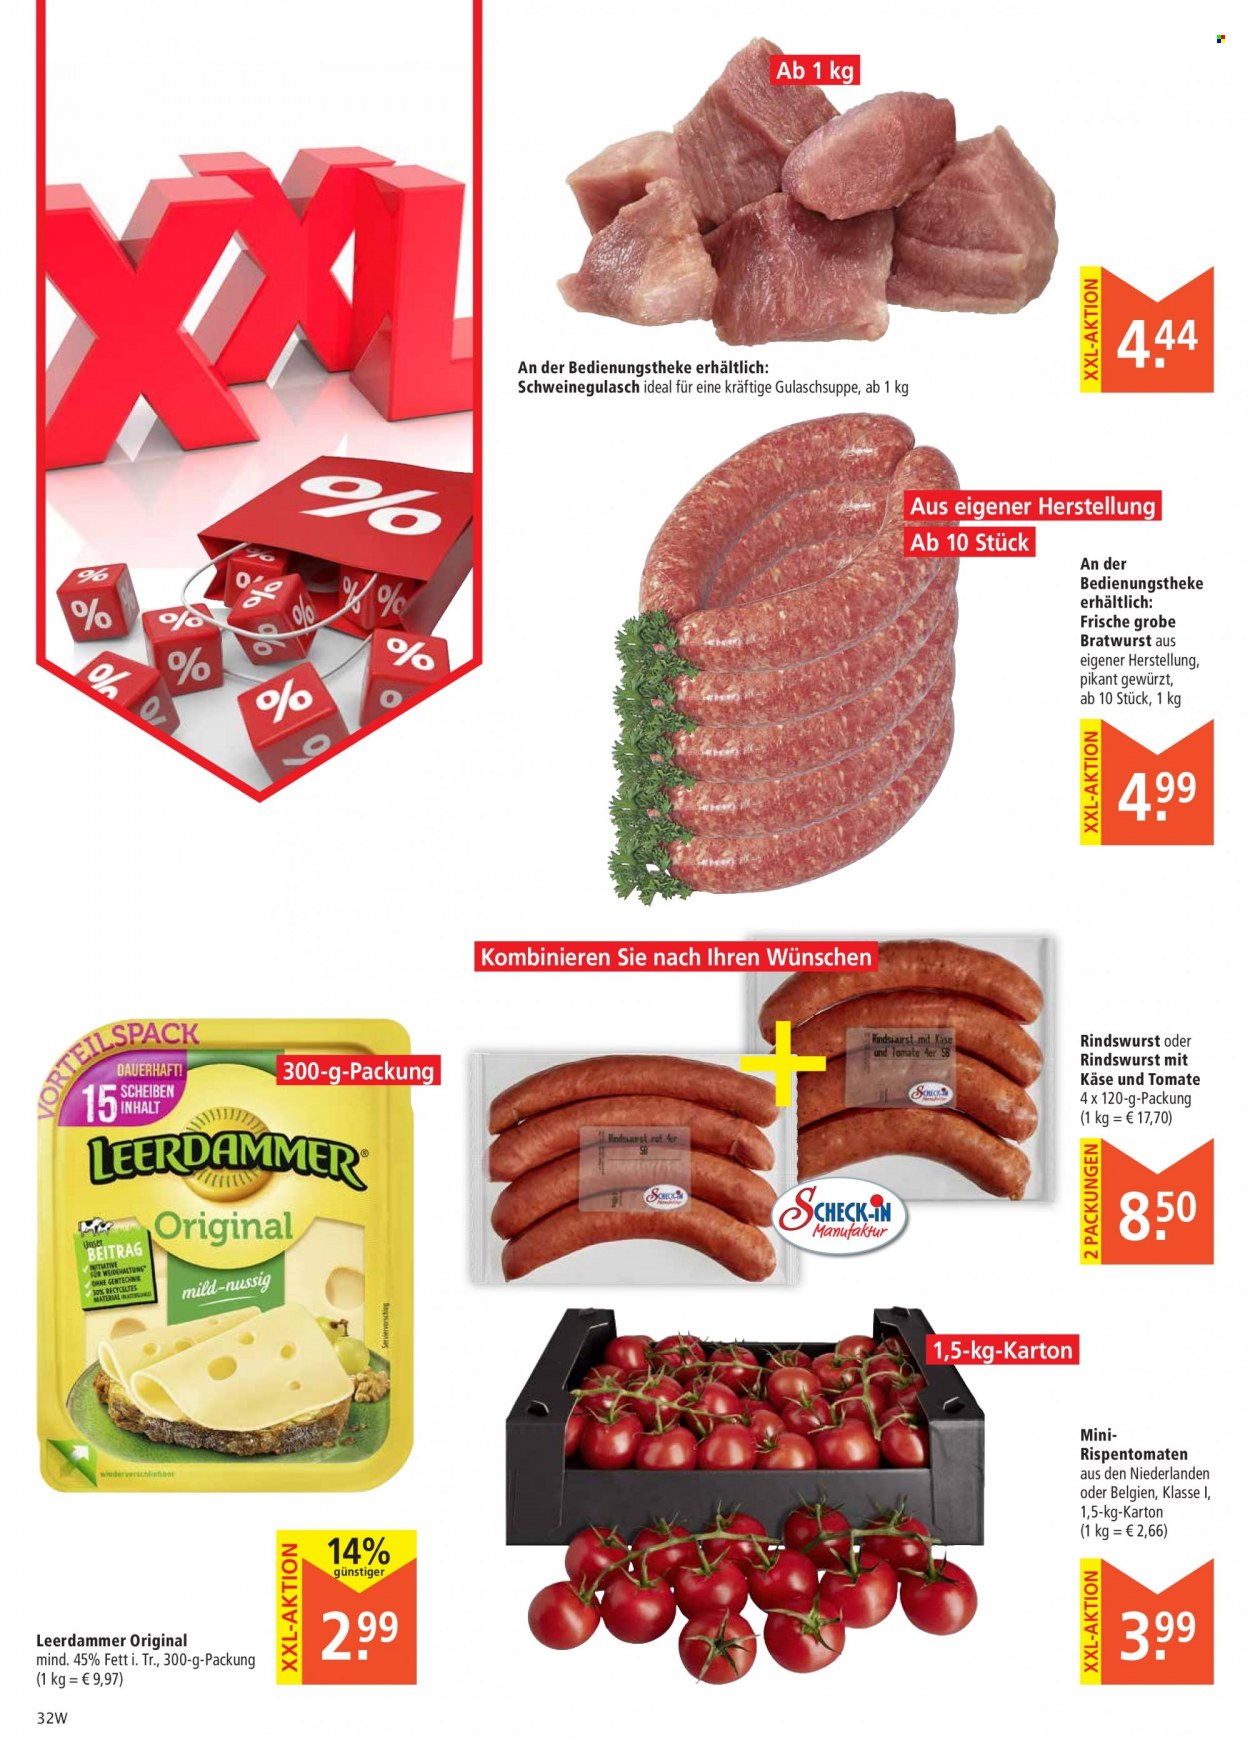 thumbnail - Prospekte Marktkauf - 13.09.2021 - 18.09.2021 - Produkte in Aktion - Rispentomaten, Schweinegulasch, Suppe, Gulaschsuppe, Bratwurst, Leerdammer. Seite 32.